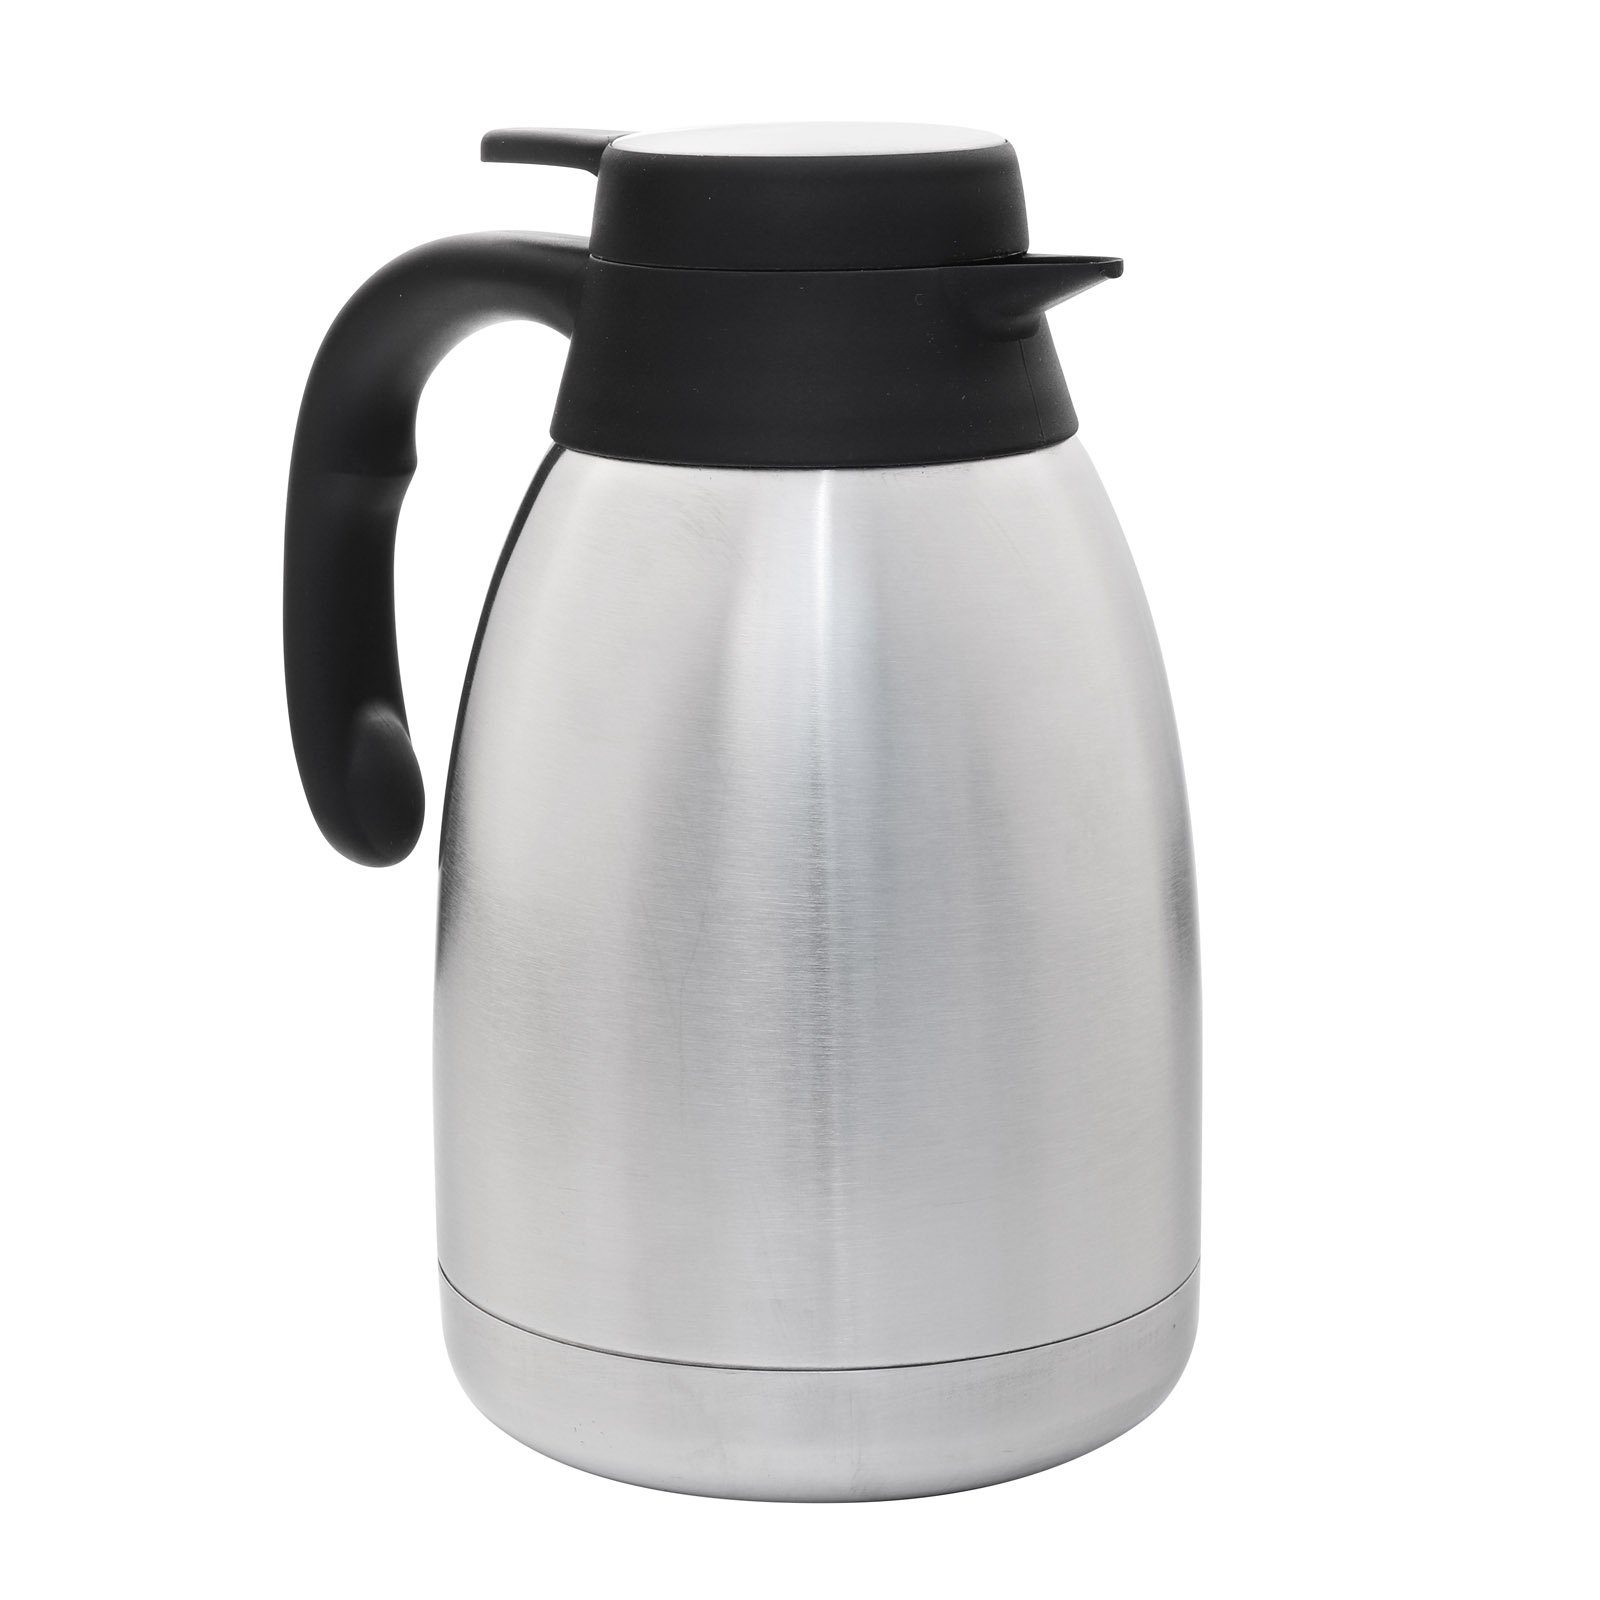 HAC24 Isolierkanne Thermoskanne Kaffeekanne Teekanne Thermo Kaffee Tee Kanne, 1,5 l, Edelstahl Einhandautomatik